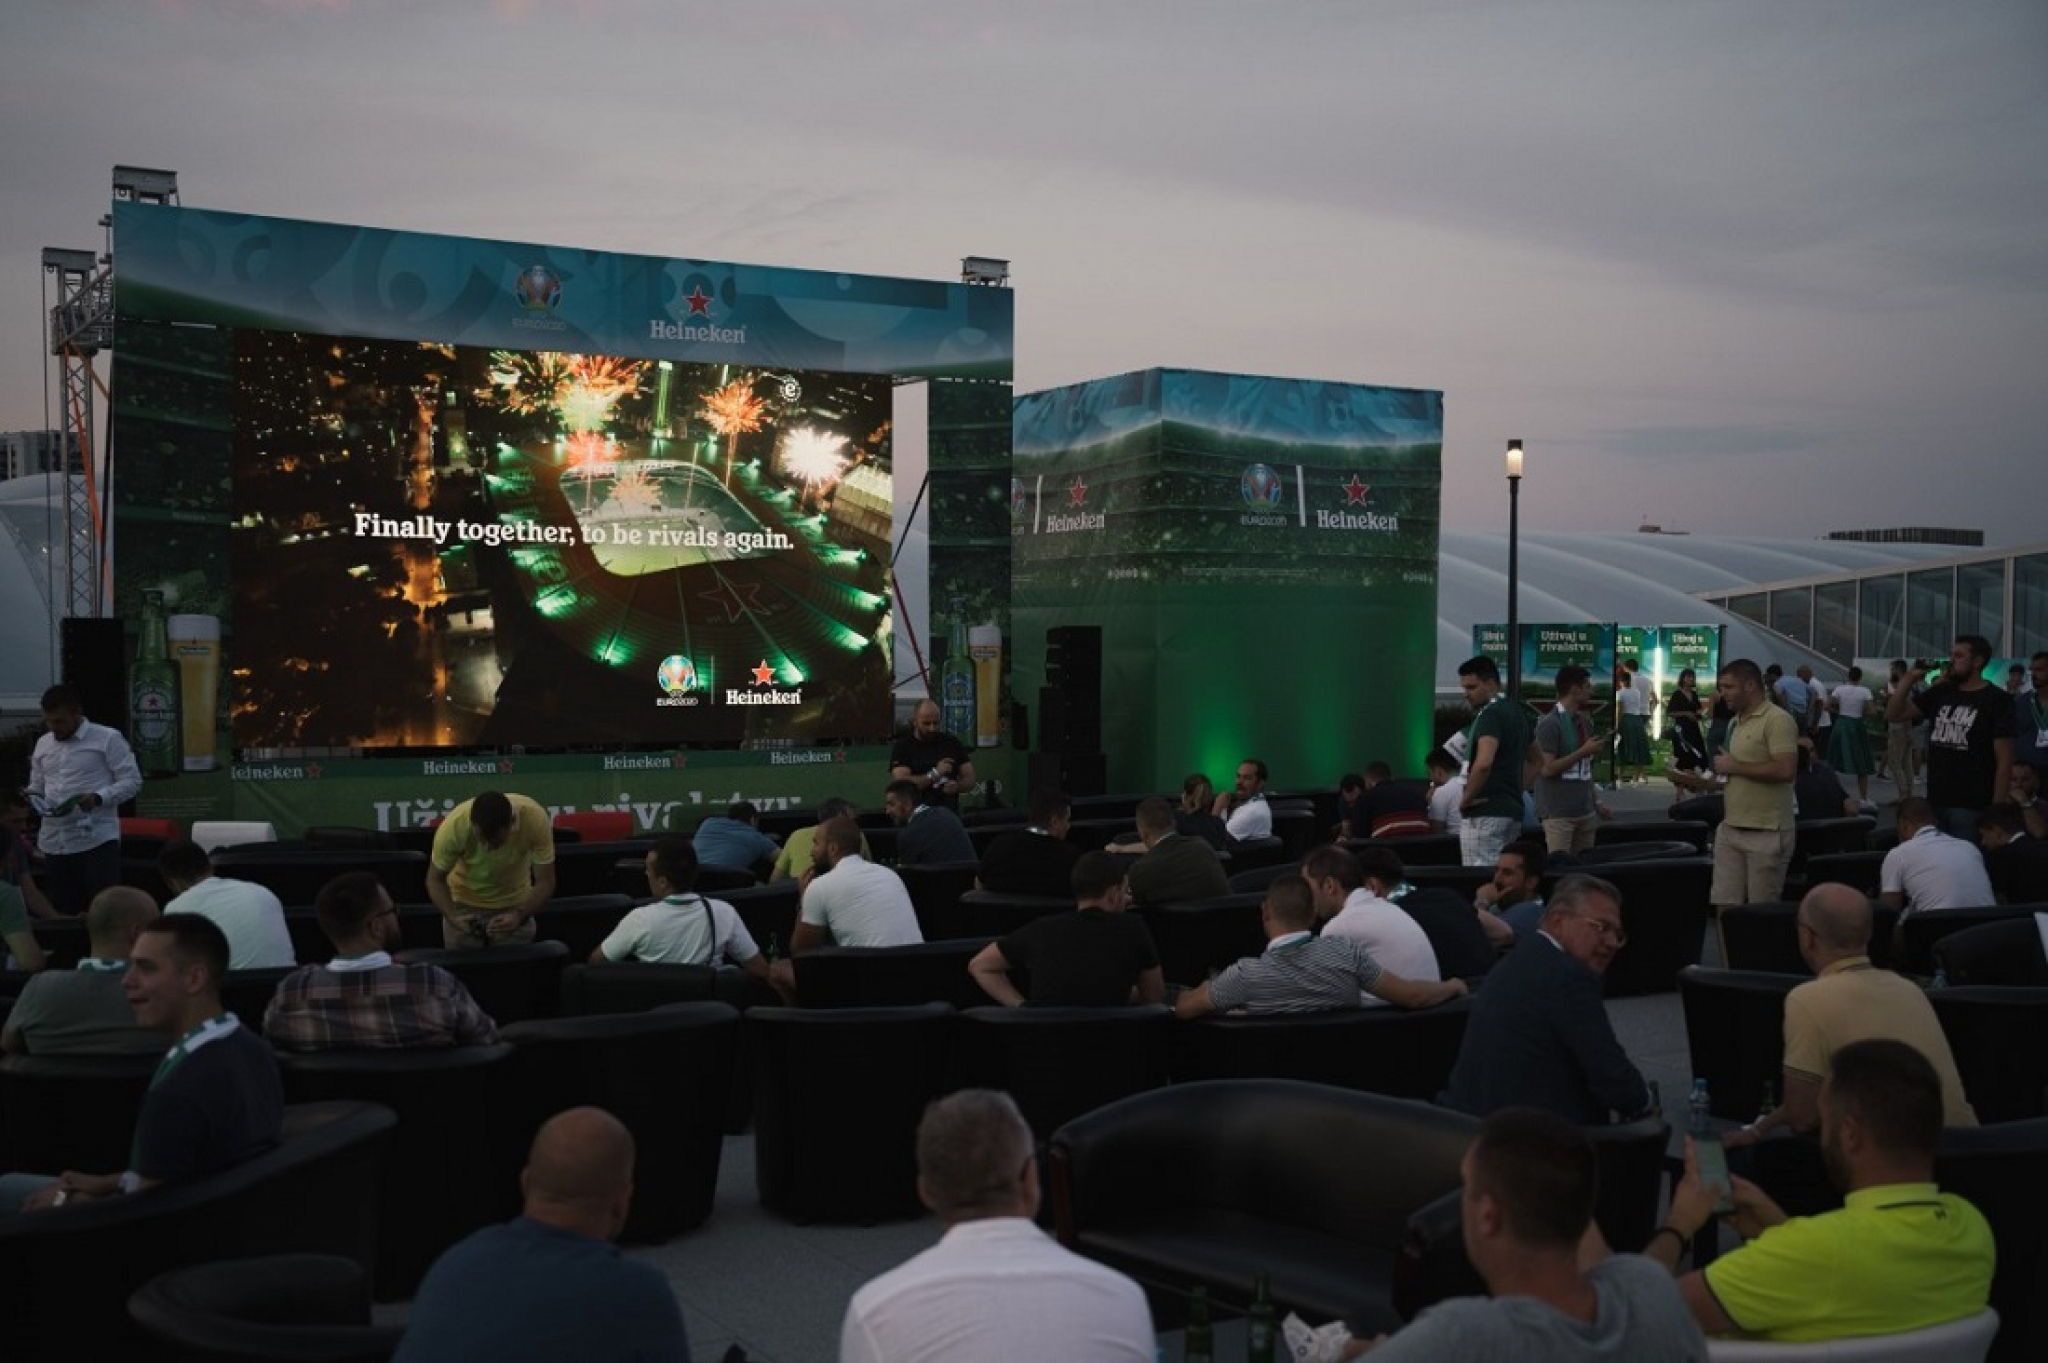 Pogledajte kako je izgledalo spektakularno Heineken® gledanje finala UEFA EURO 2020™ u Beogradu!